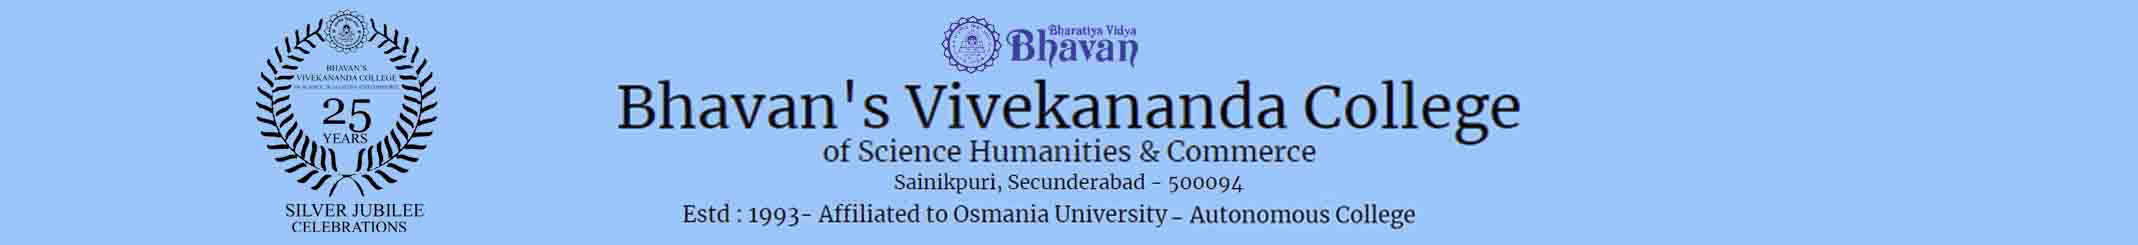 Bhavan's Vivekananda College